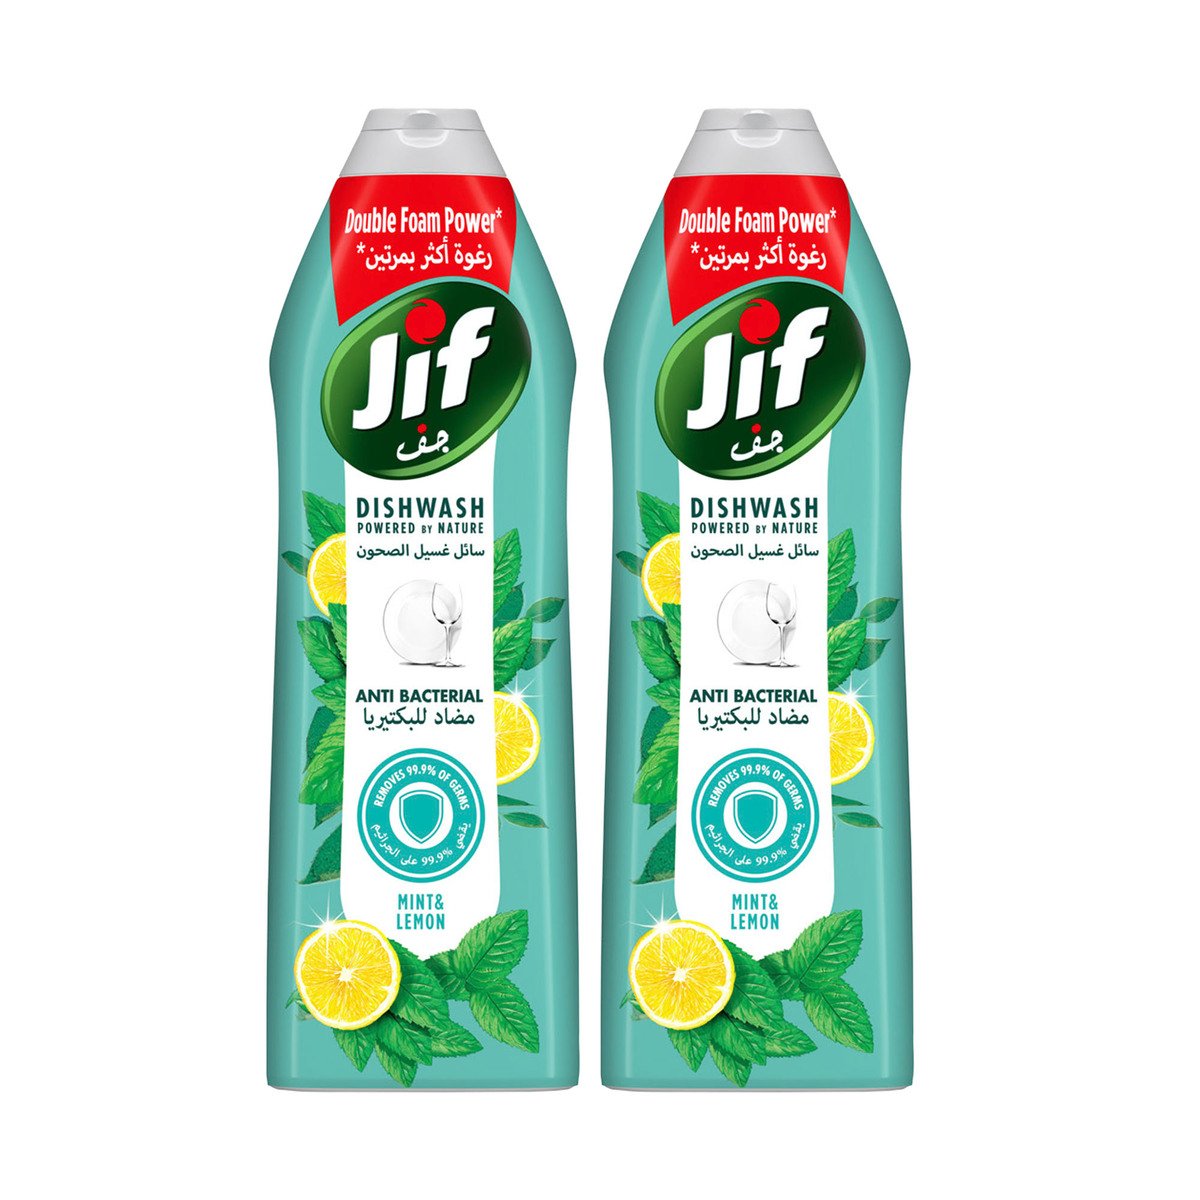 Buy Jif Antibacterial Dishwashing Liquid Mint & Lemon Double Foam Power Value Pack 2 x 670 ml Online at Best Price | Washing Up | Lulu UAE in UAE